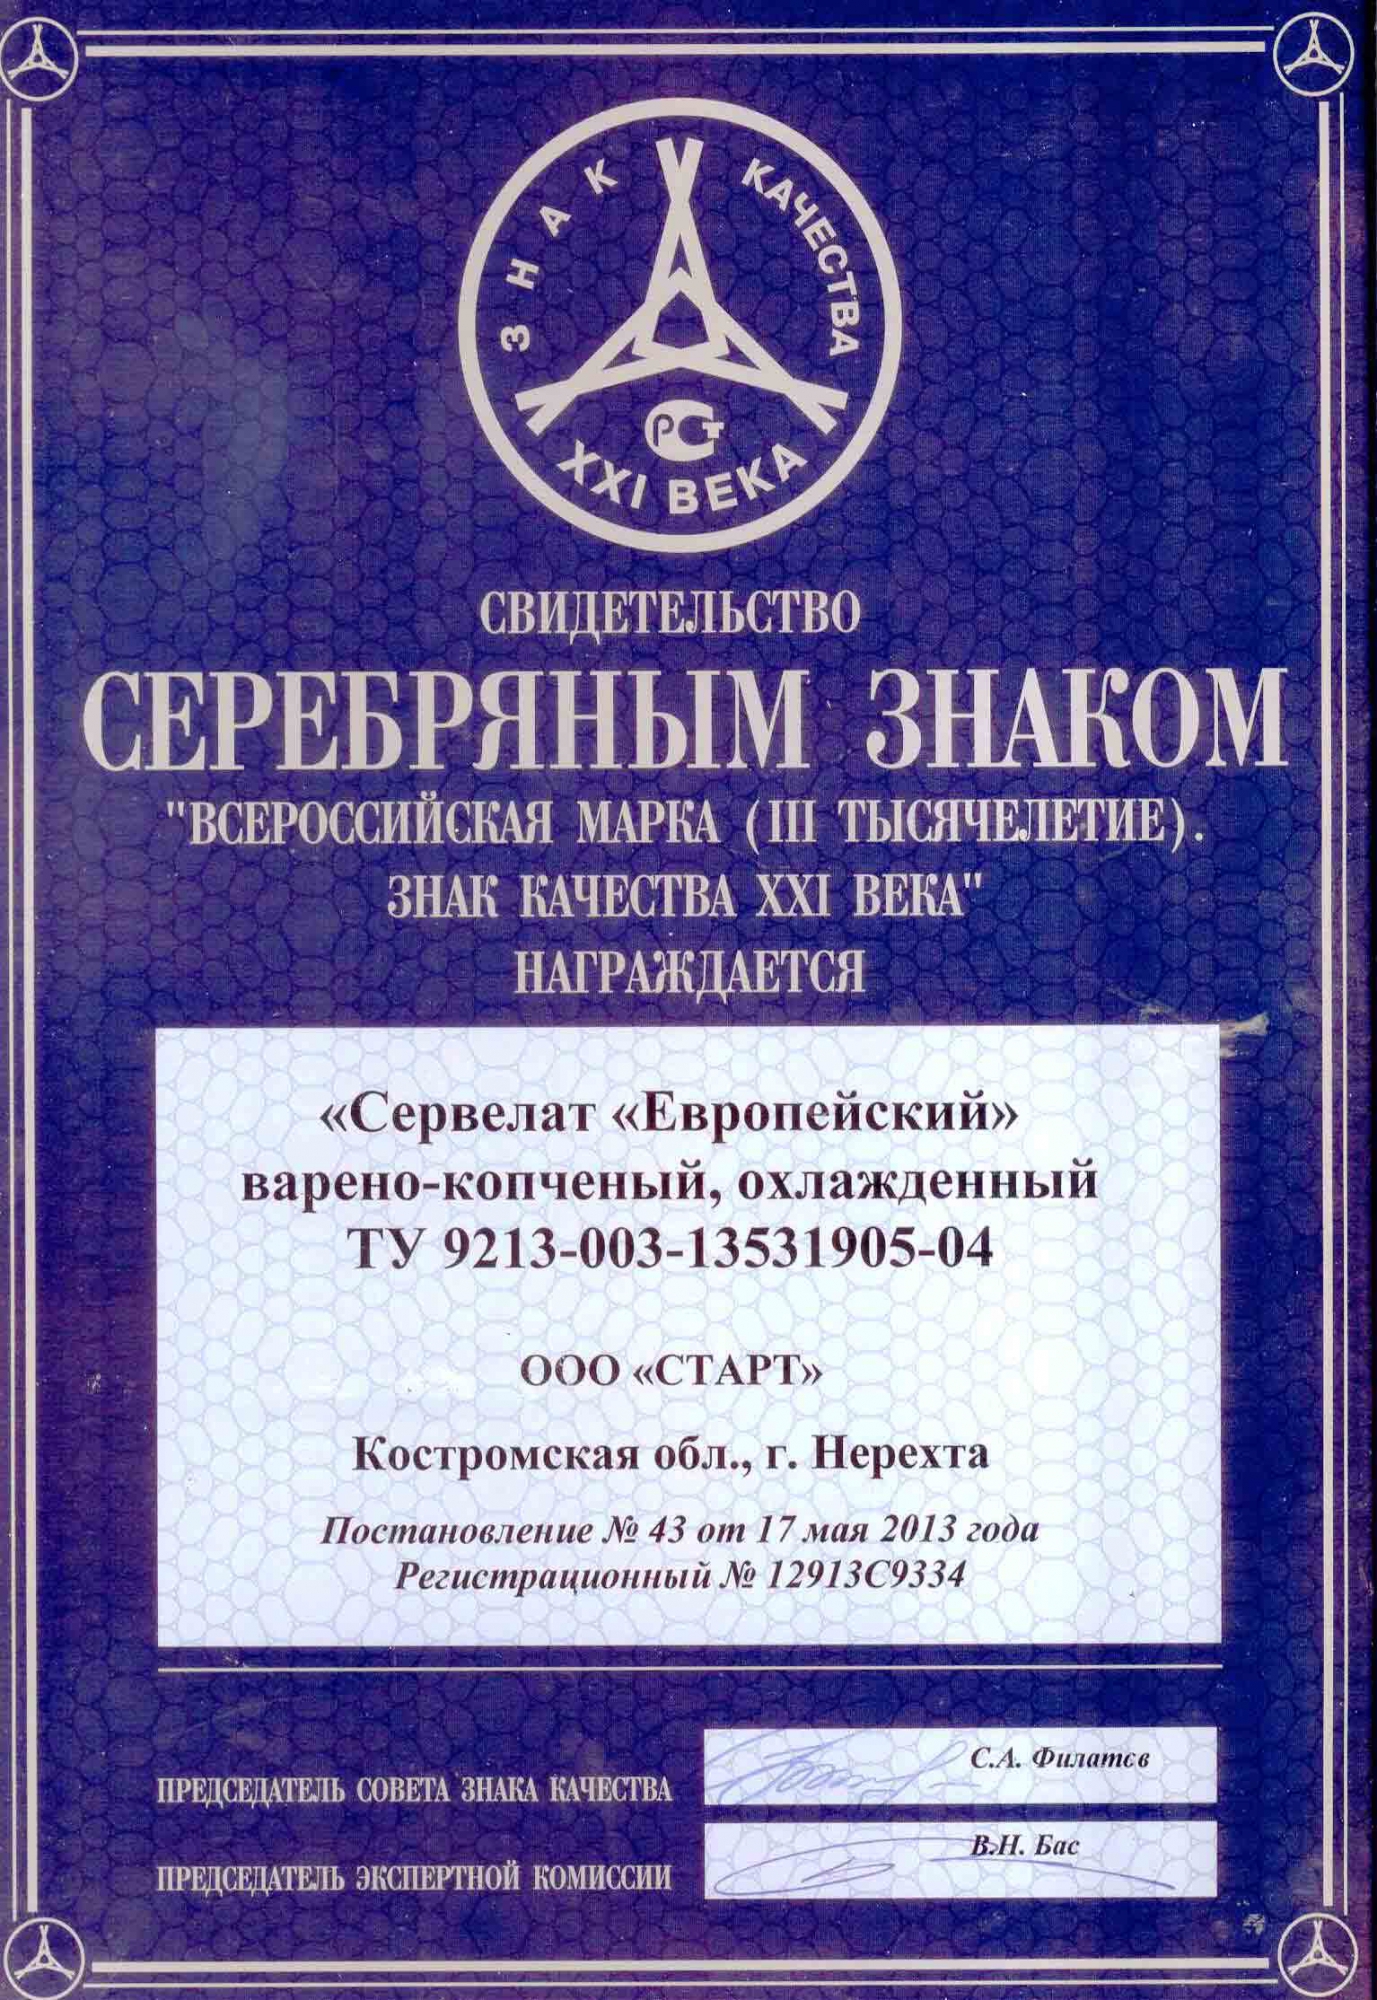 Медаль серебряная "Знак качества 2013" "Сервелат "Европейский"